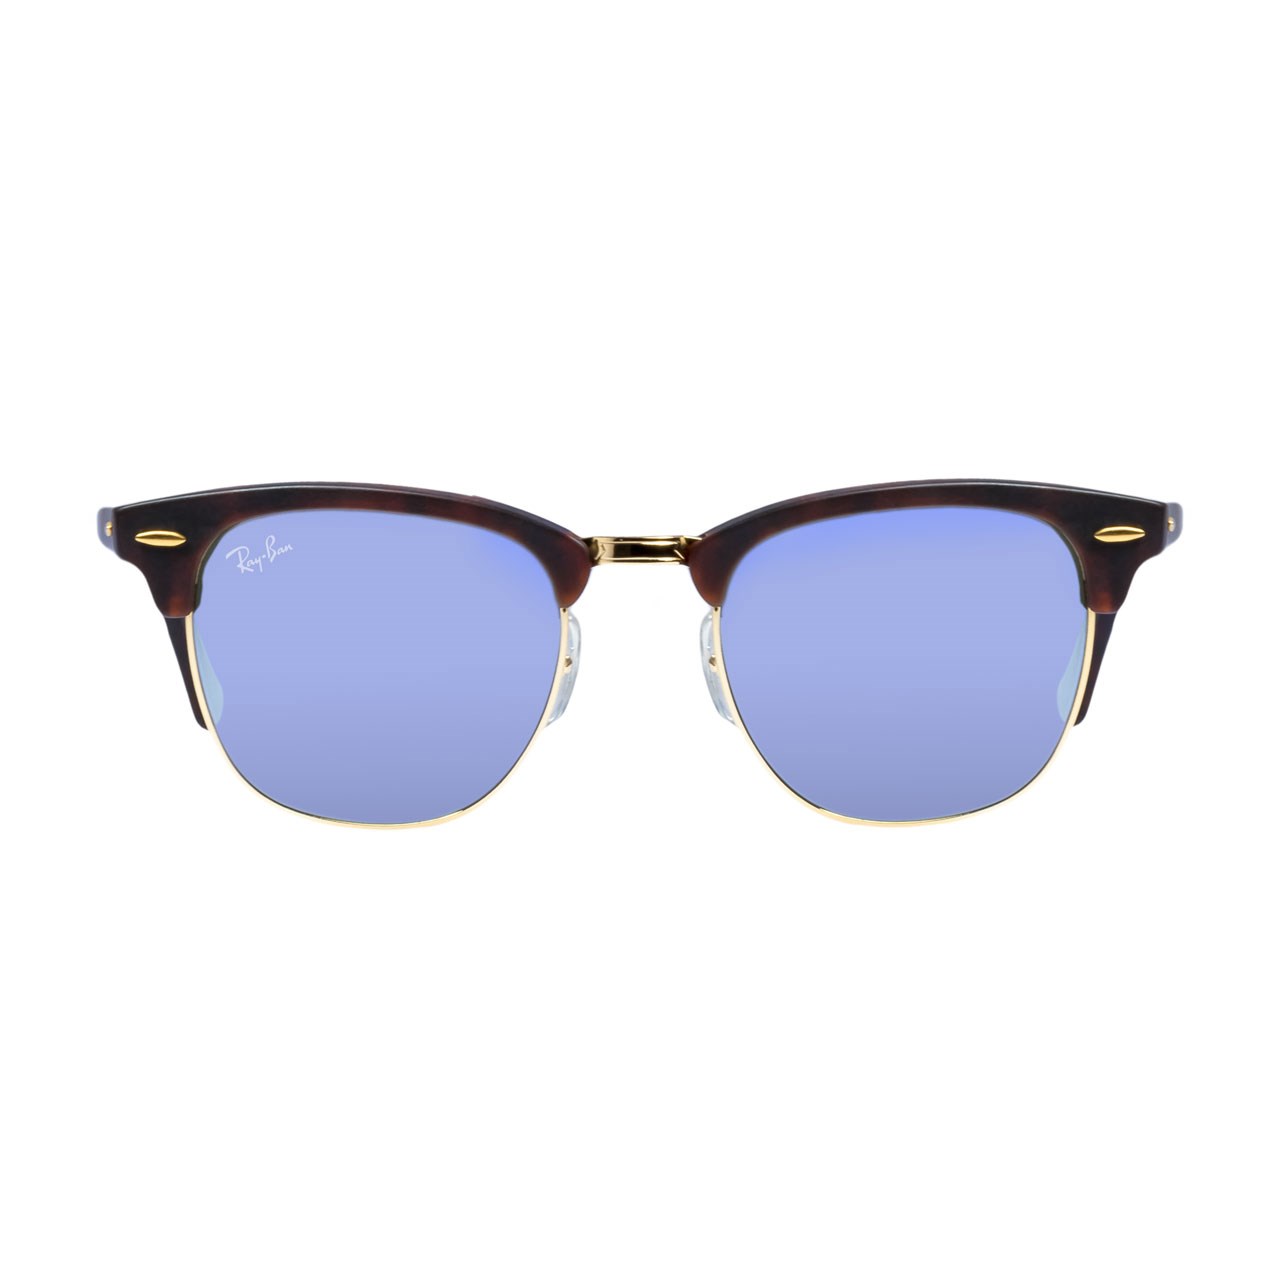 نکته خرید - قیمت روز عینک آفتابی ری بن سری Club Master مدل RB 3016 - 1145/30 خرید